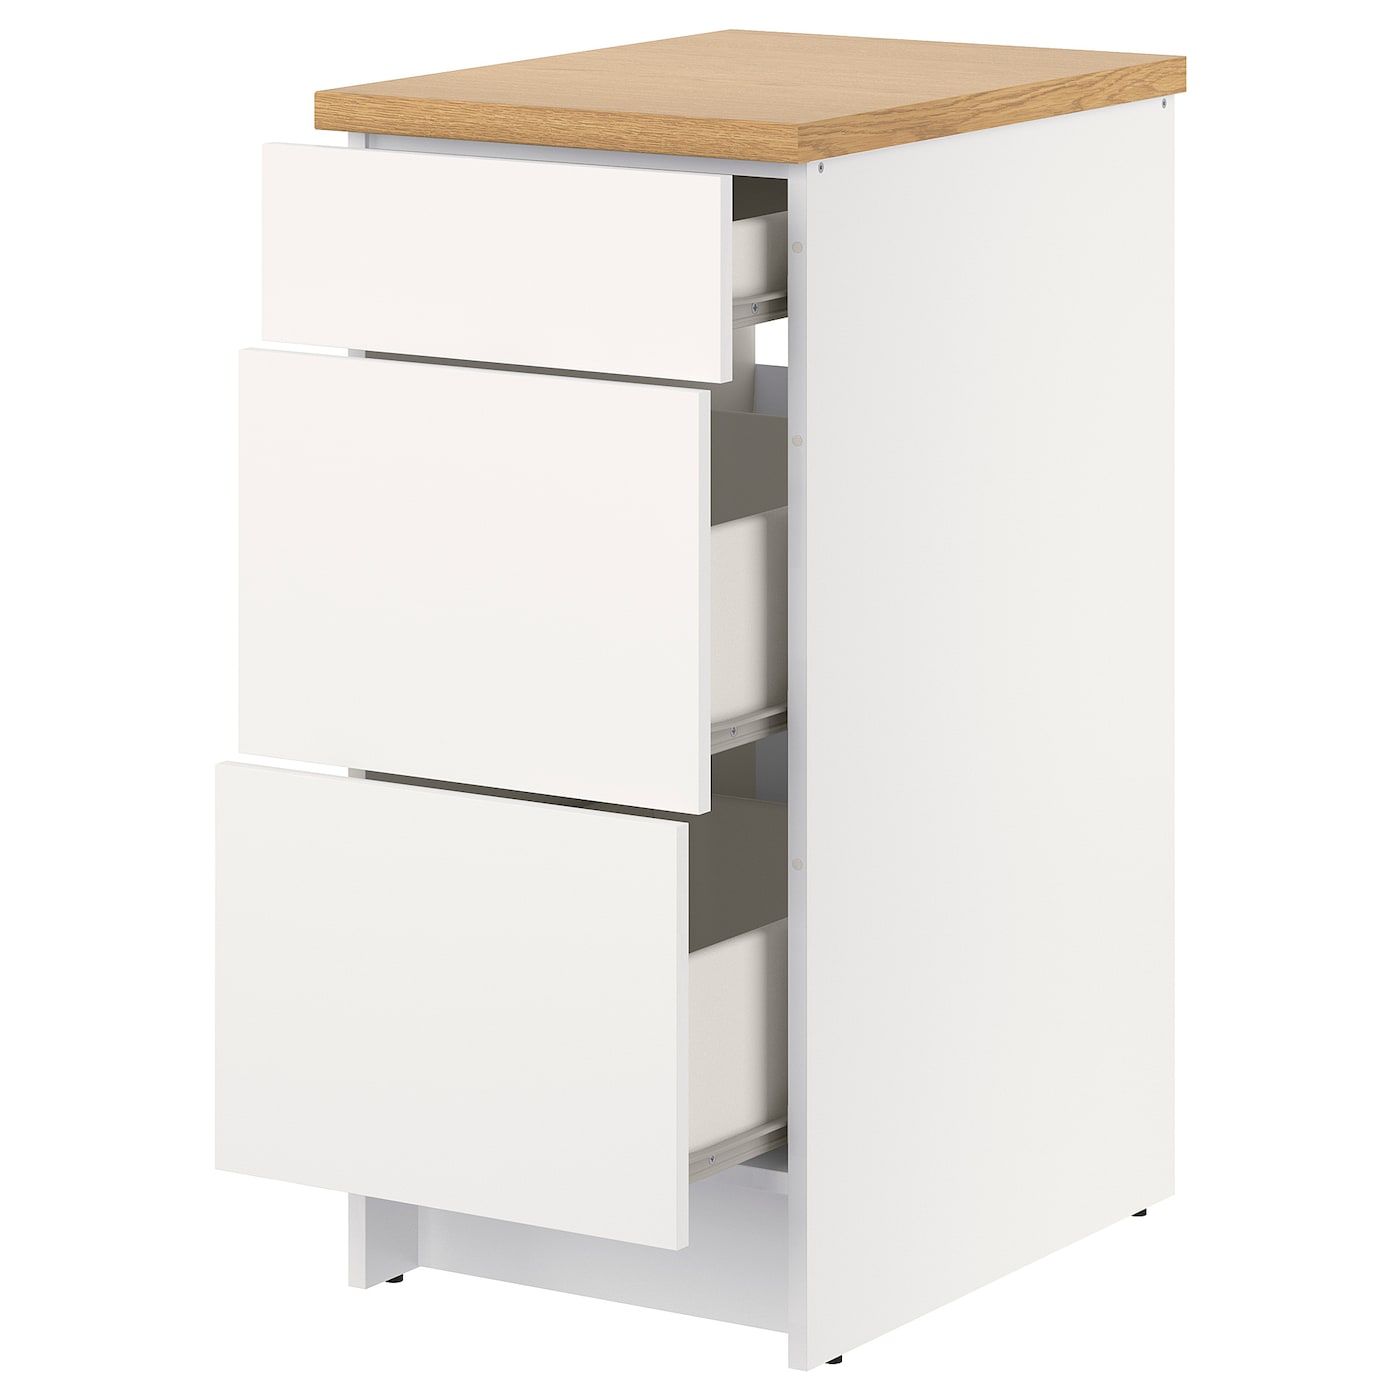 Базовый шкаф с выдвижными ящиками - IKEA KNOXHULT, 91x61x40см, белый, КНОКСХУЛЬТ ИКЕА